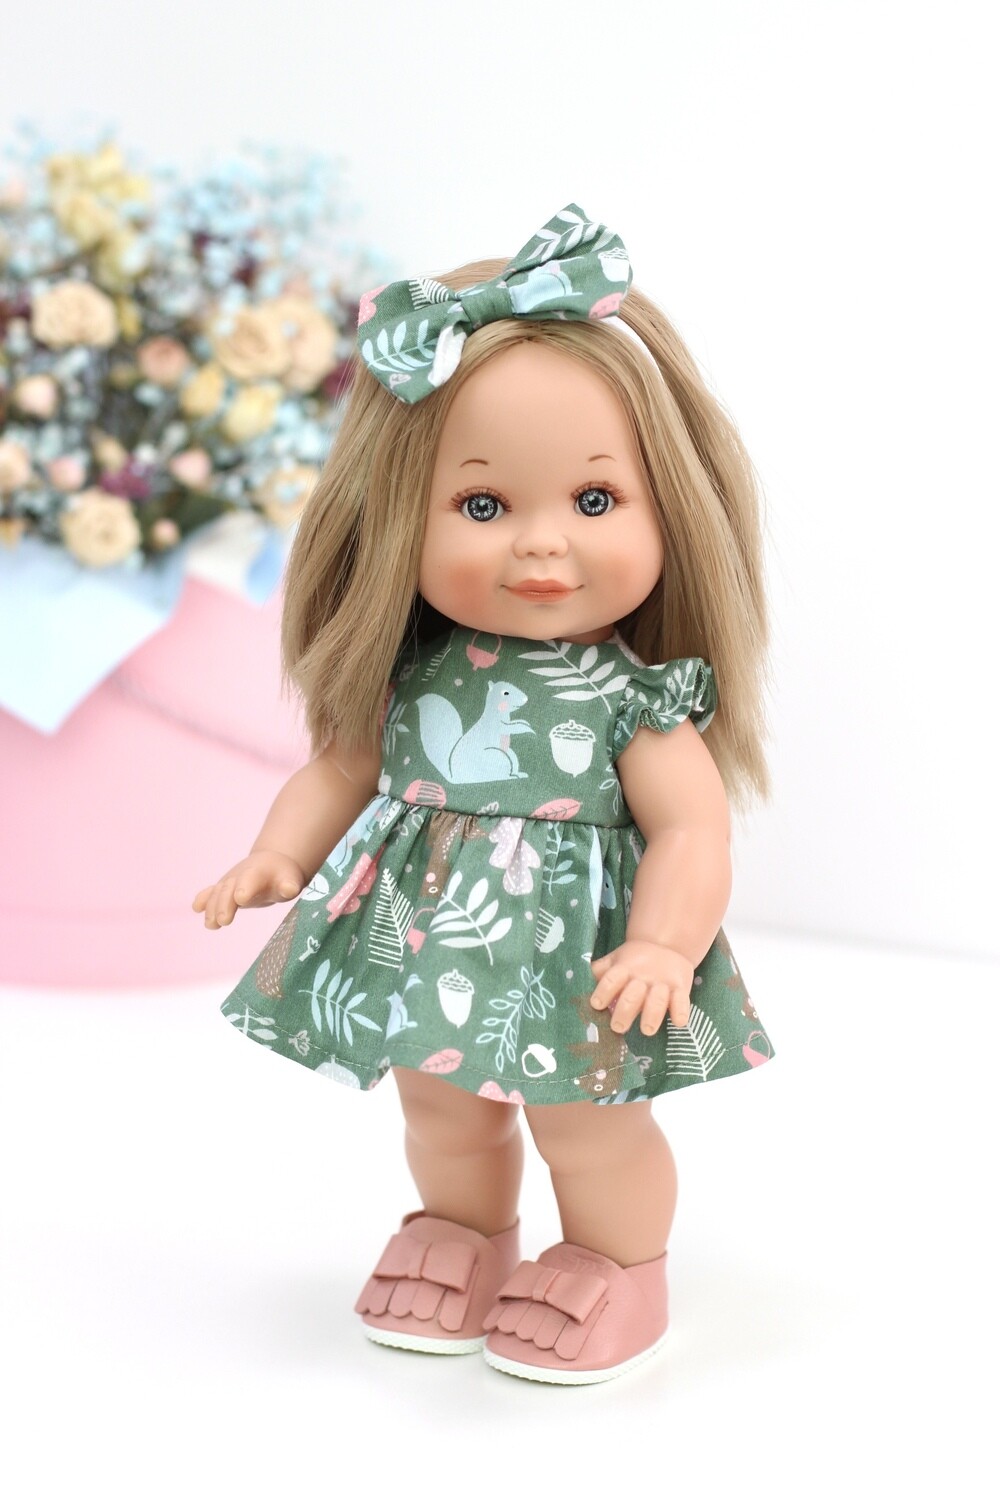 Кукла Бетти с ароматом карамели, со средней длиной волос, в платье 